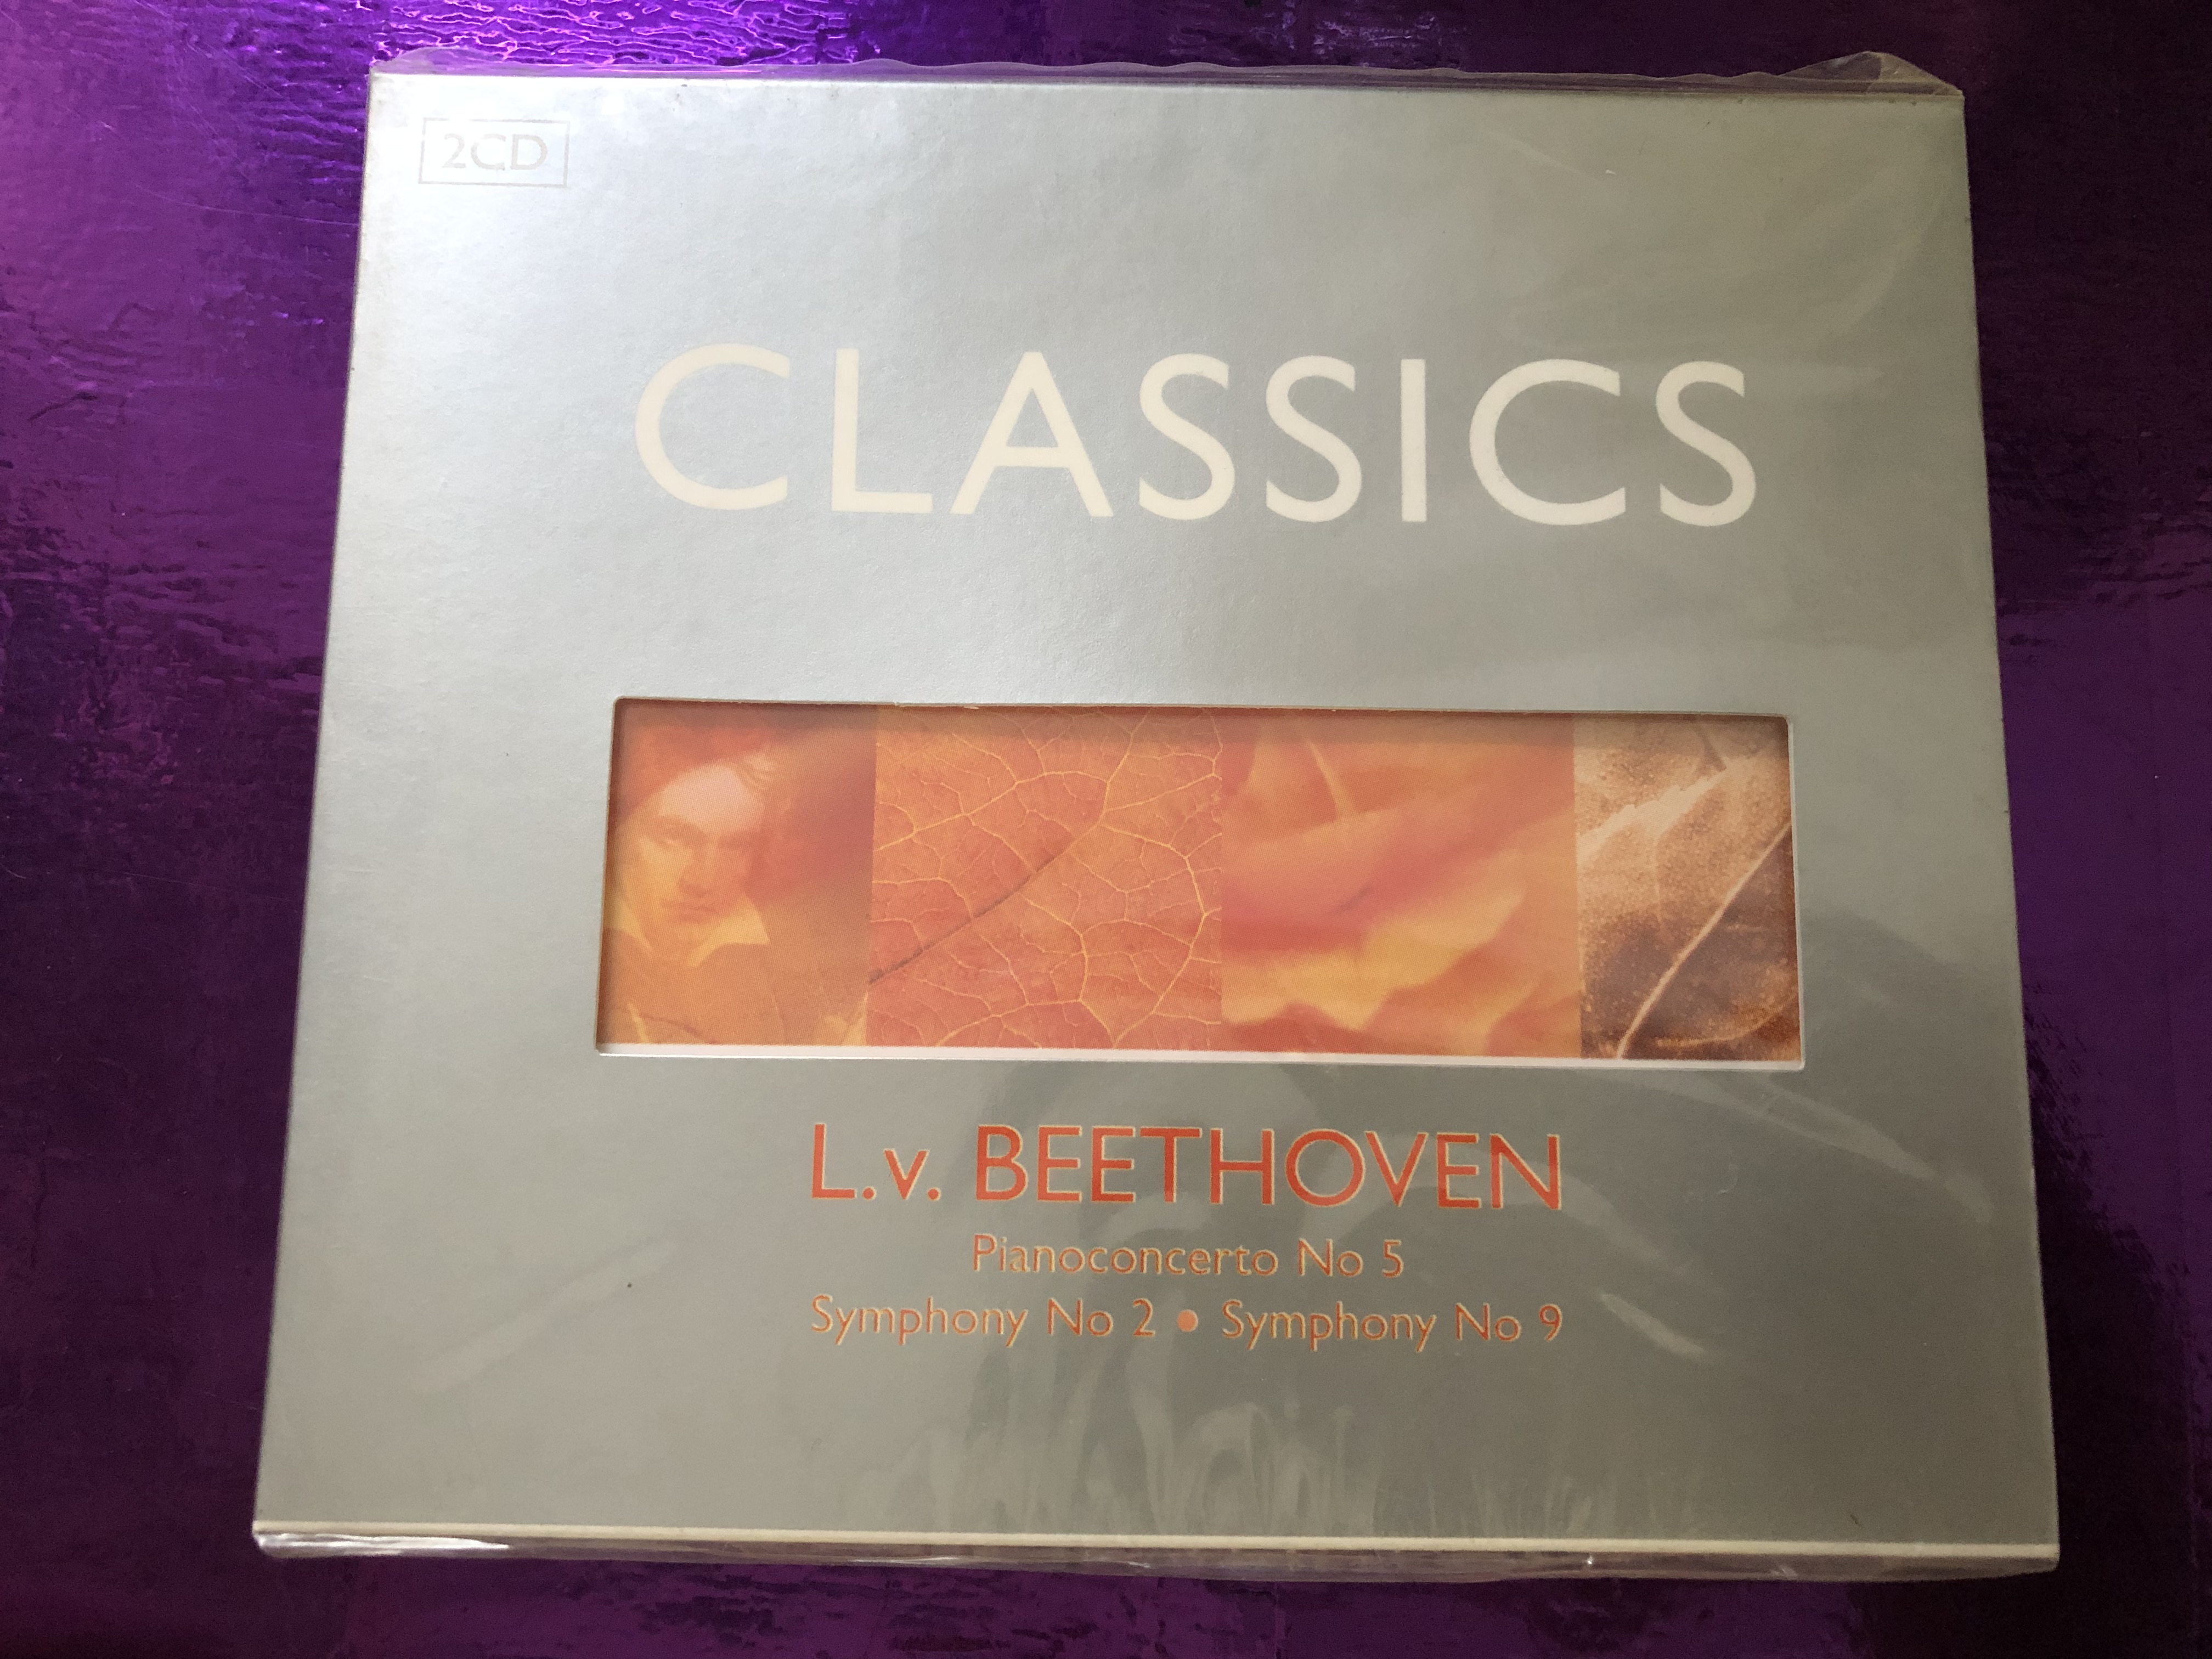 classics-l.-v.-beethoven-pianoconcerto-no.-5-symphony-no.-2-symphony-no.-9-lmm-2x-audio-cd-2006-3521022-1-.jpg